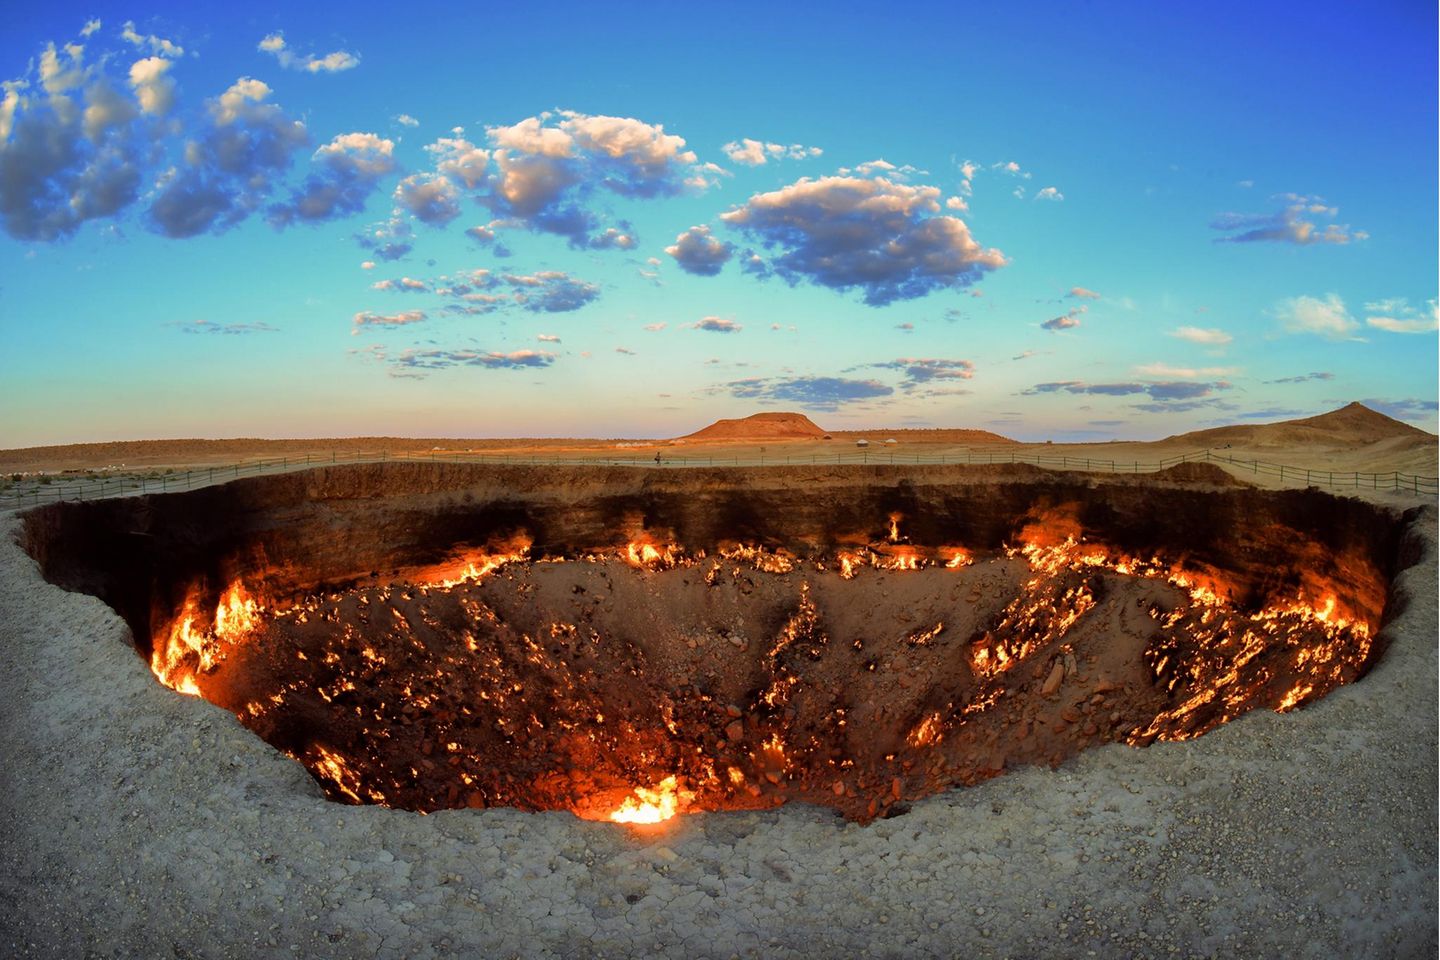 Der Krater von Derweze, auch unter dem Namen "Tor zu Hölle" bekannt, brennt seit Jahrzehnten aufgrund von austreten Methan